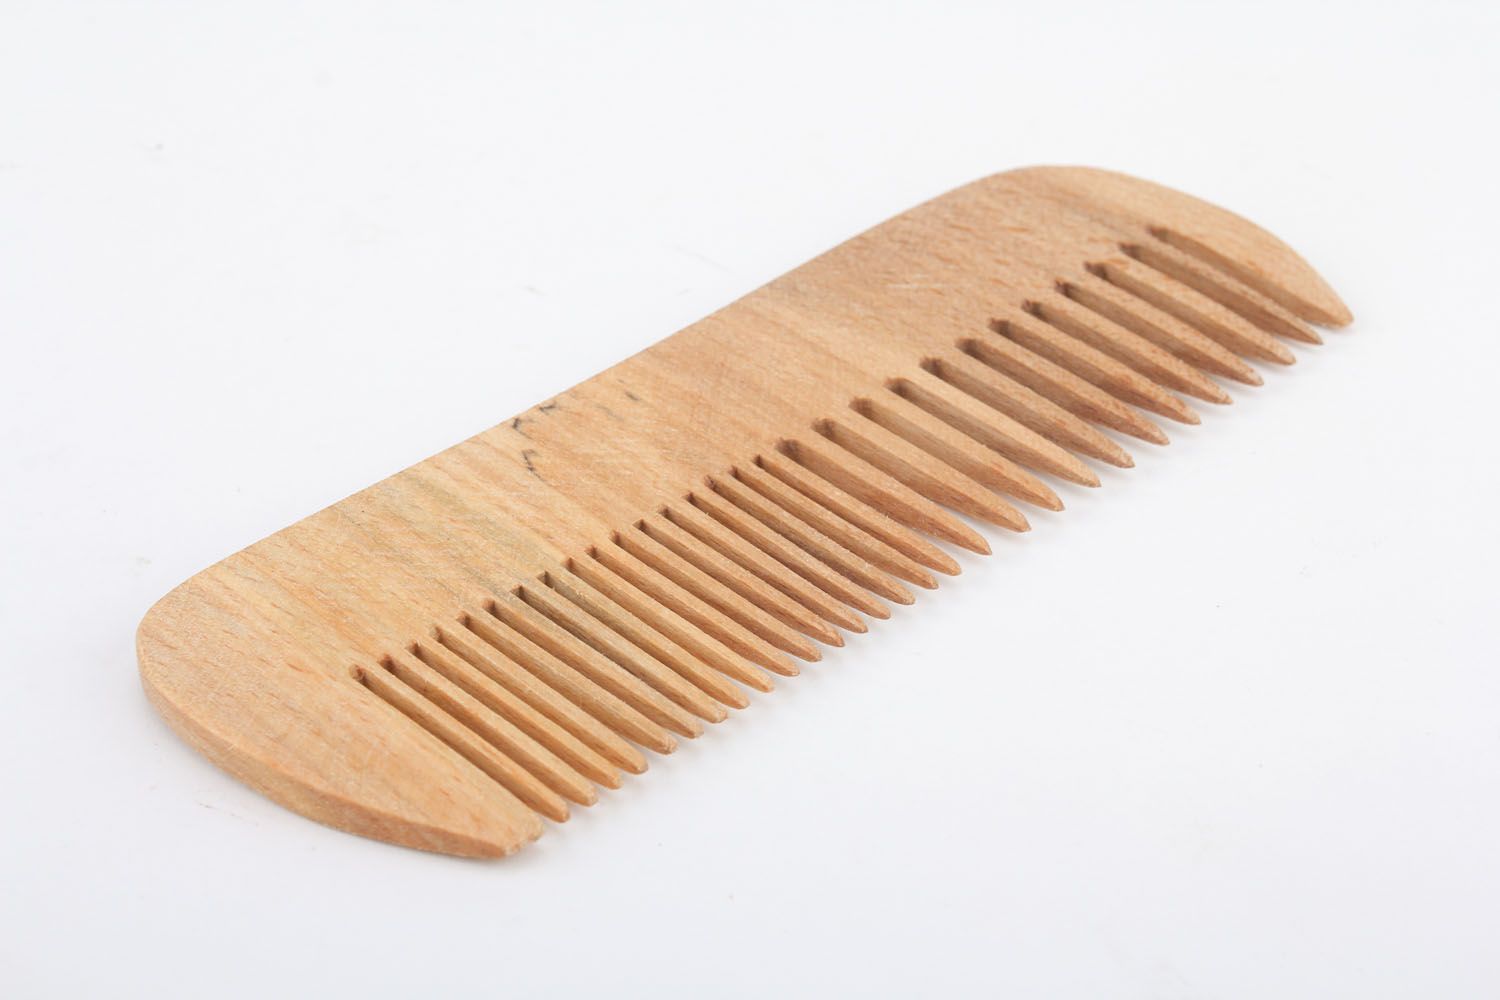 Cherry wood comb photo 2